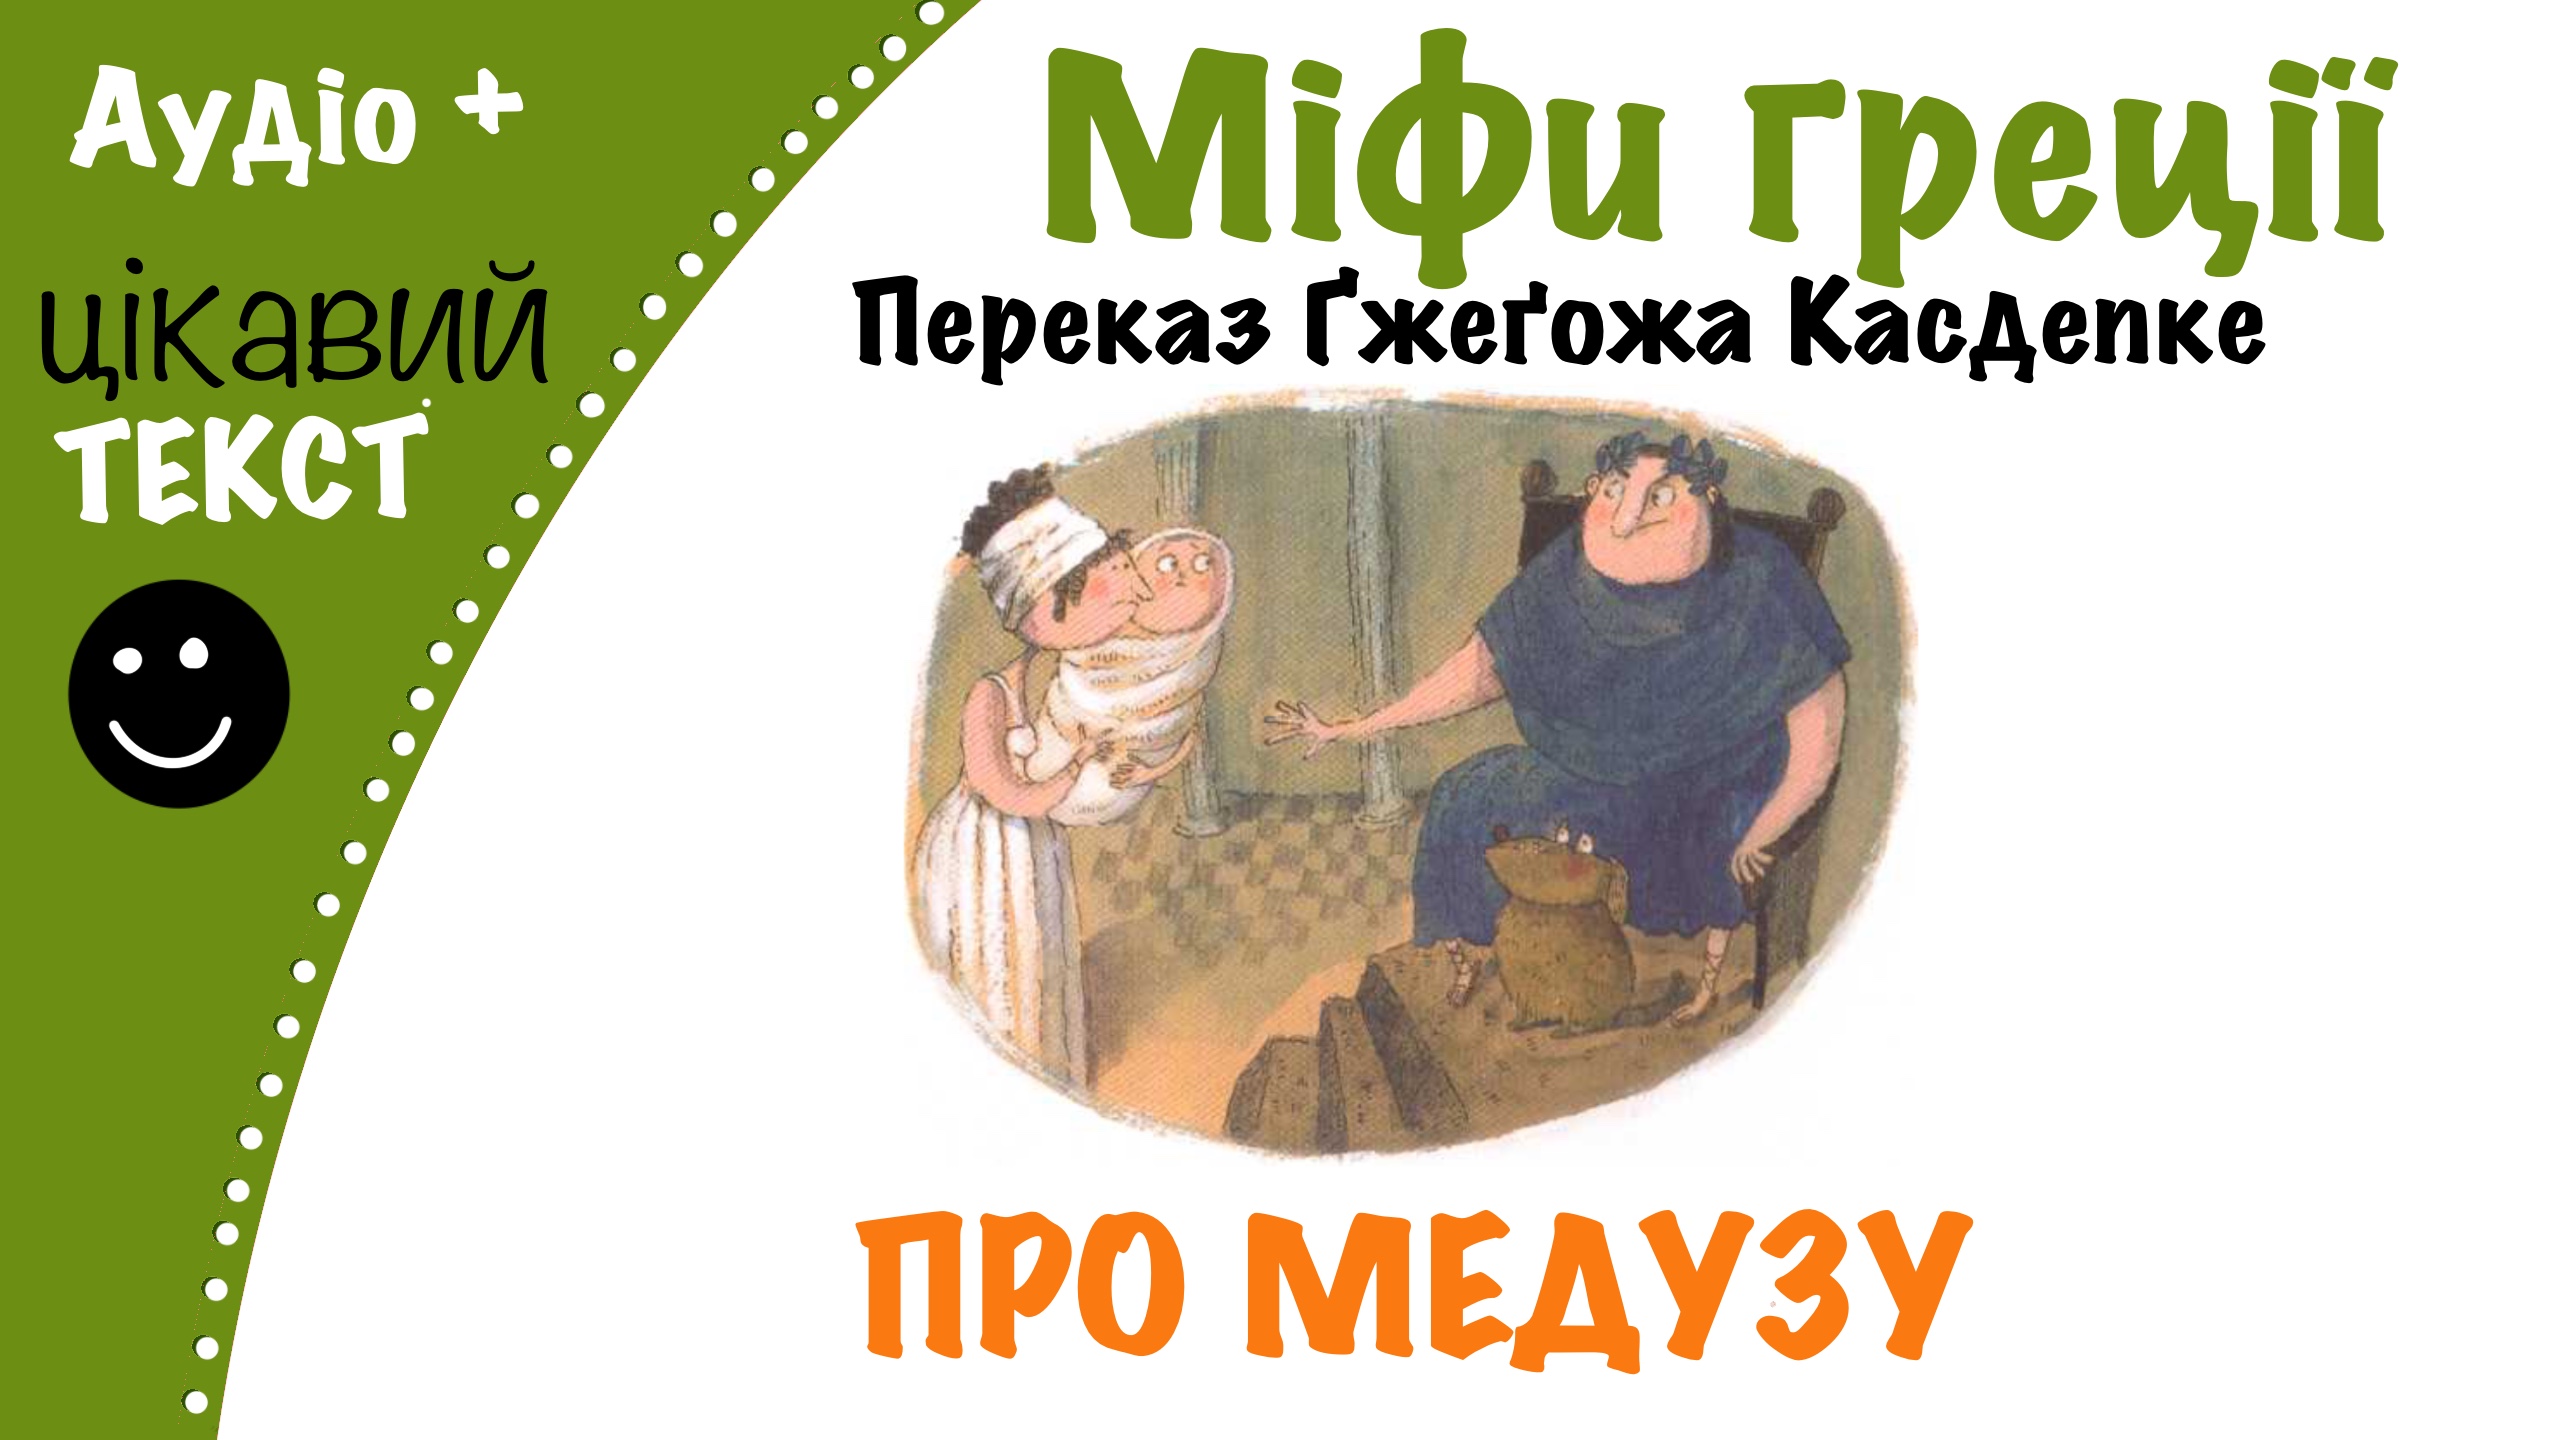 Перейти до: Грецький міф про Медузу. Переказ Ґжеґожа Касдепке